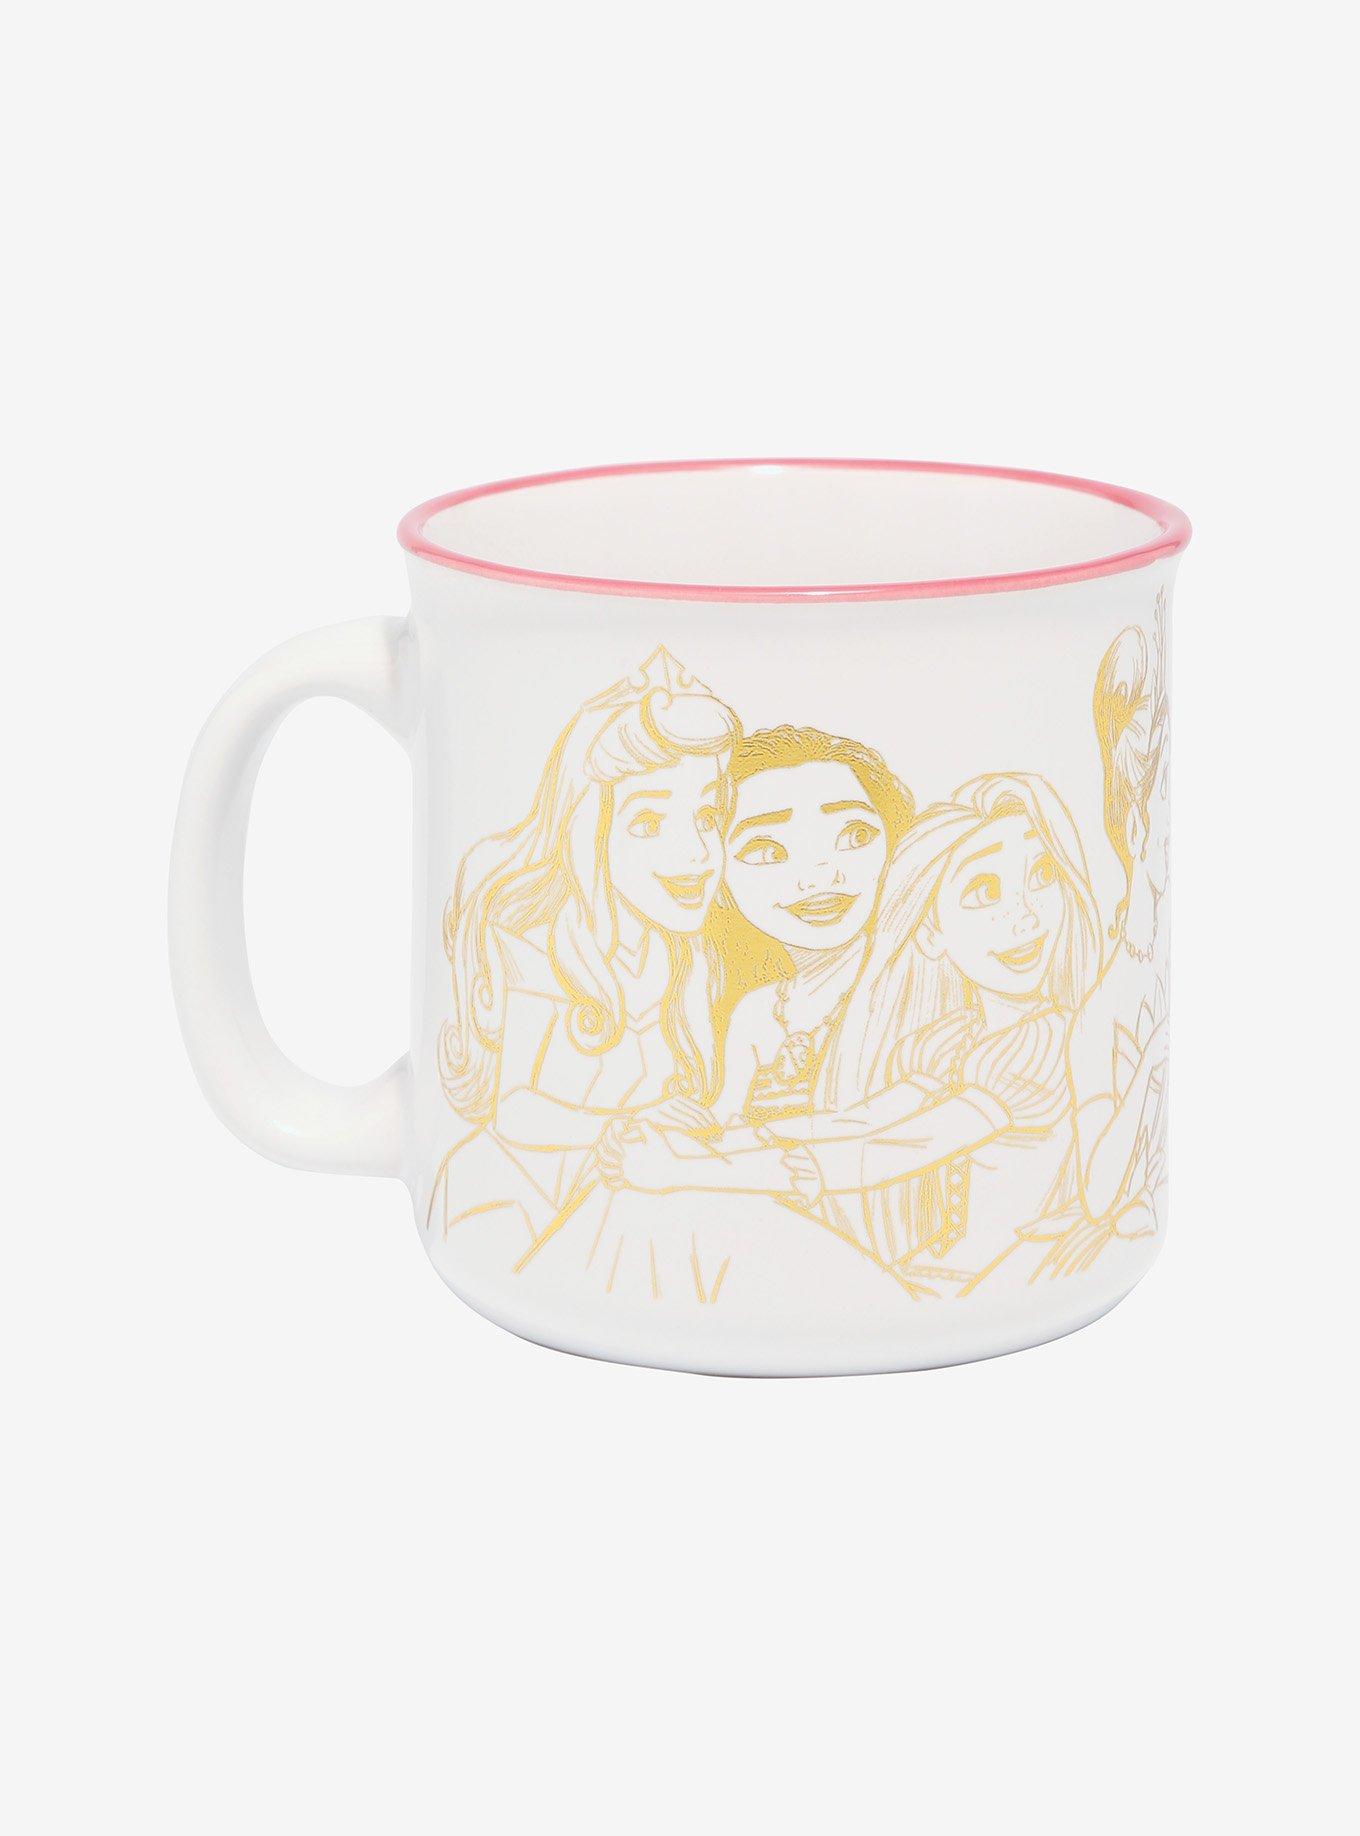 Disney Princesses Group Gold-Etched Camper Mug, , hi-res